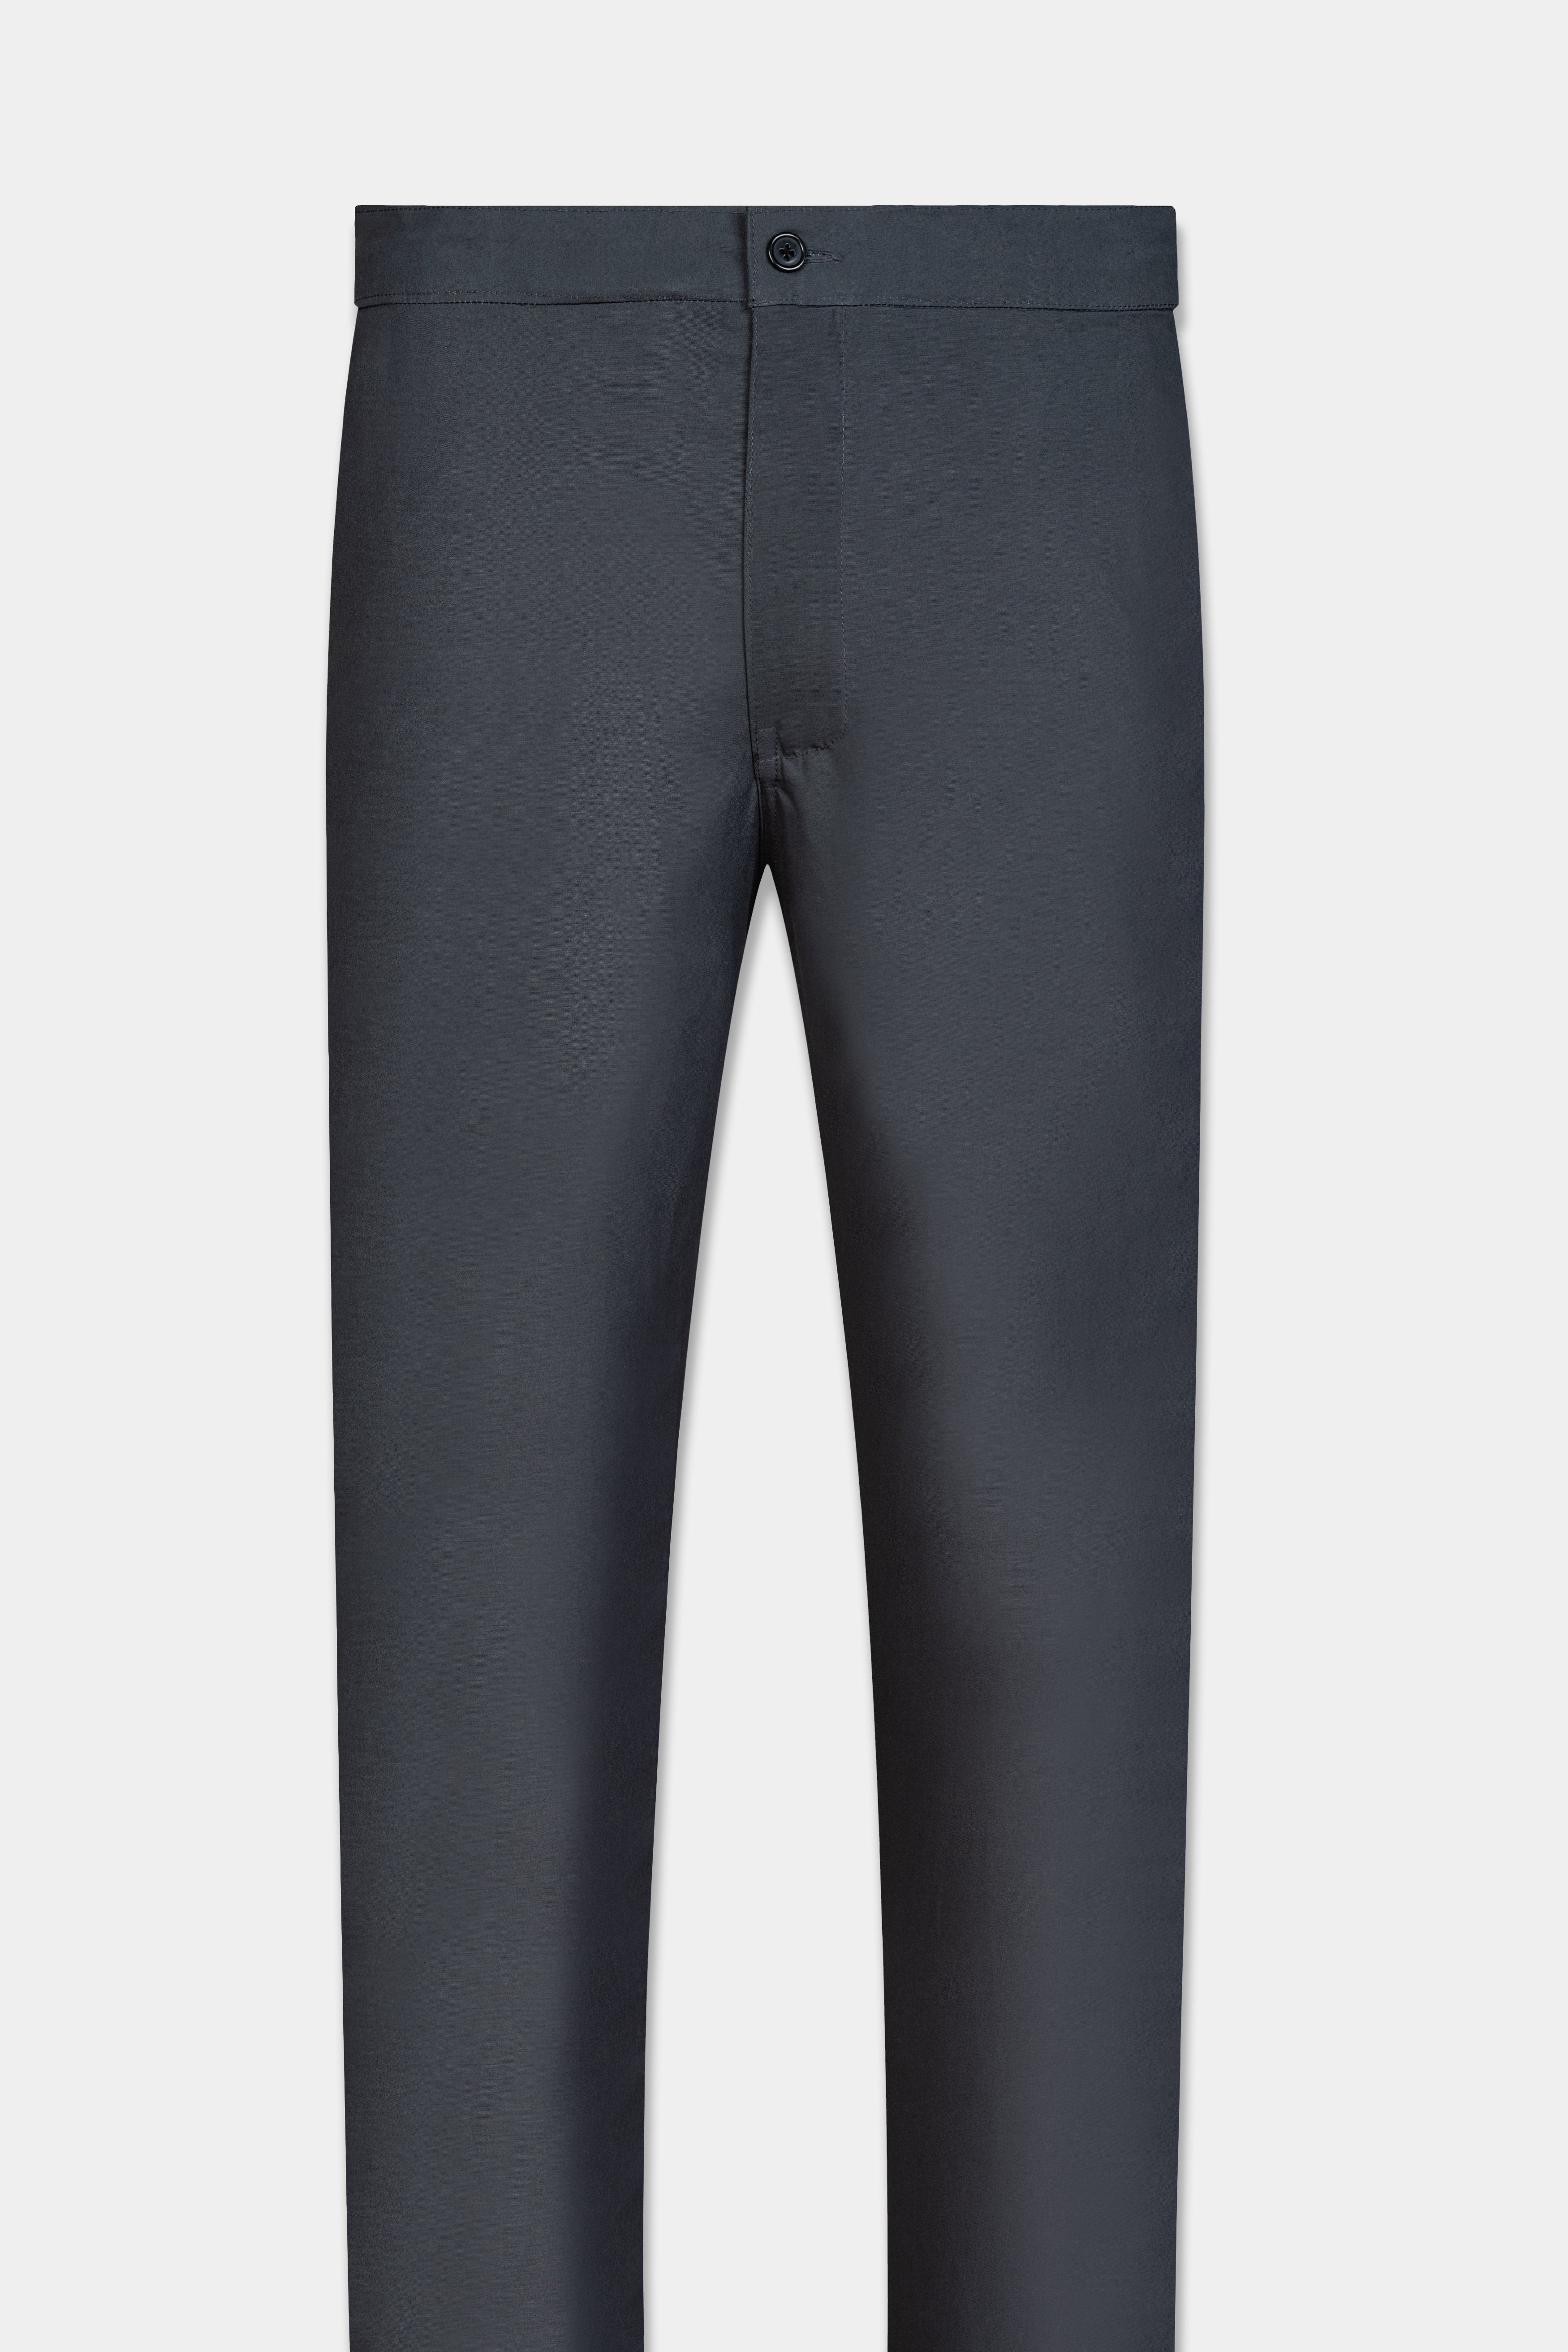 Charcoal Gray Royal Oxford Cotton Lounge Pant